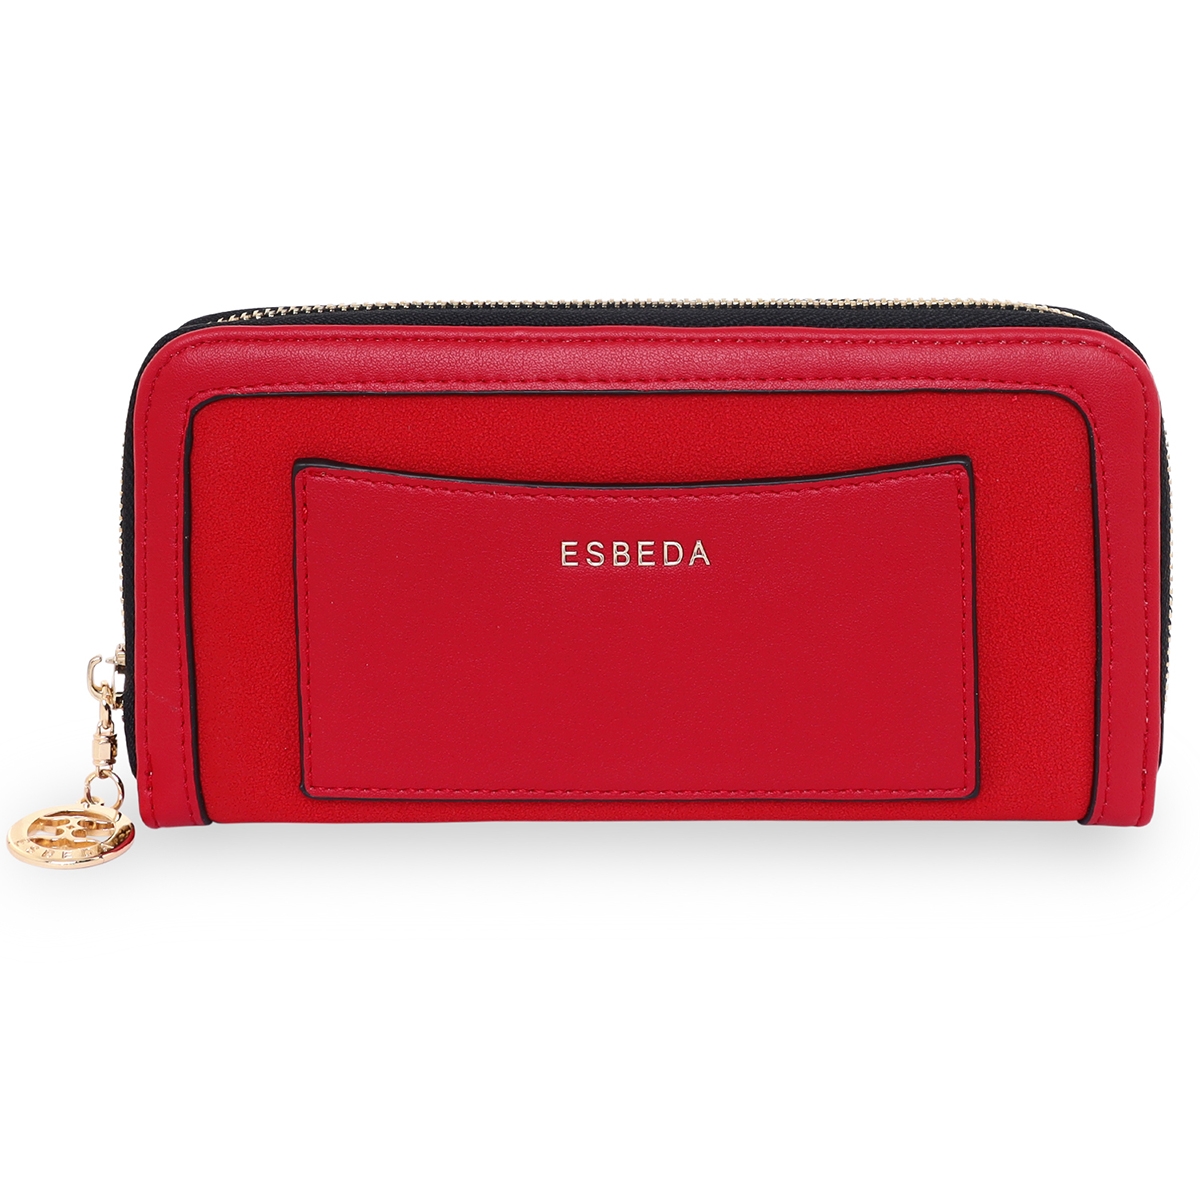 ESBEDA | ESBEDA Red Color Soft Suede Wallet For Women's- Large